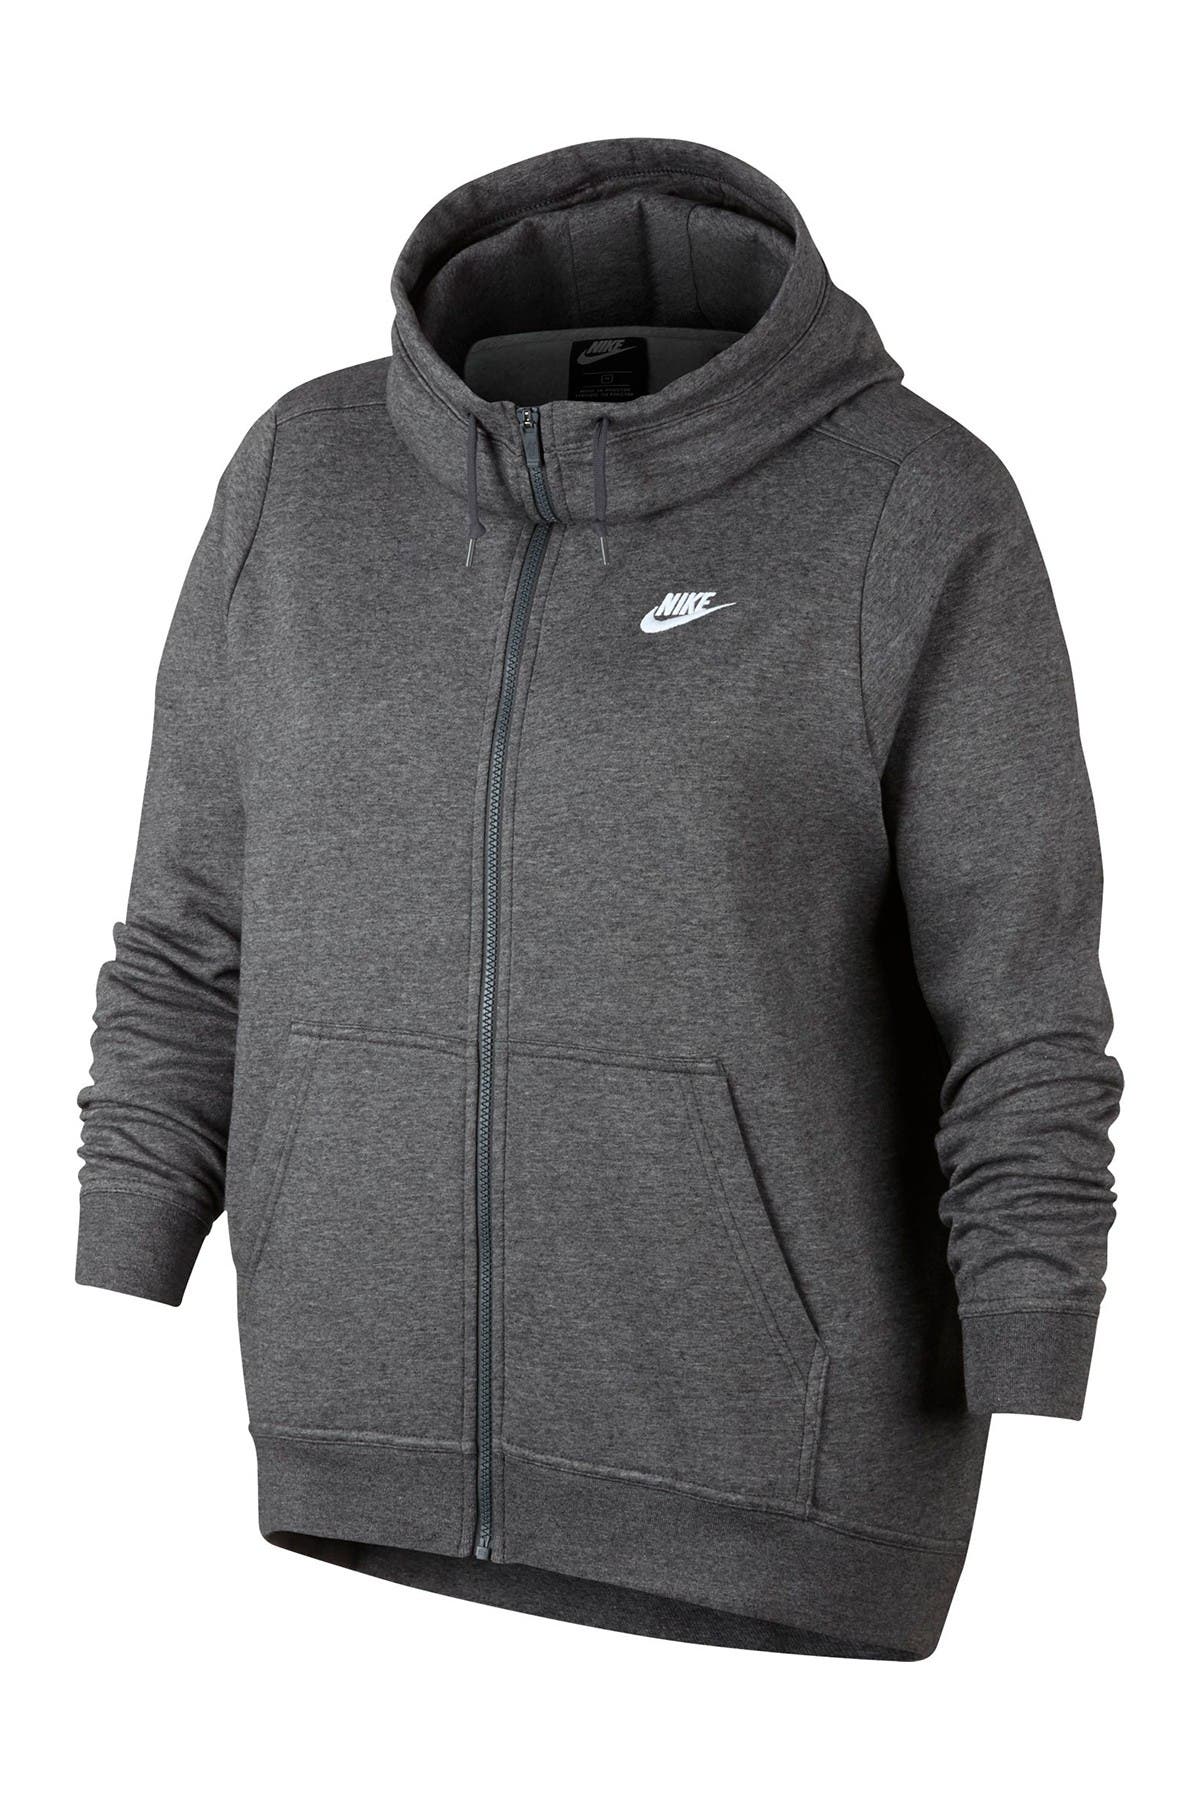 Nike | Funnel Neck Full Zip Fleece Hoodie | Nordstrom Rack